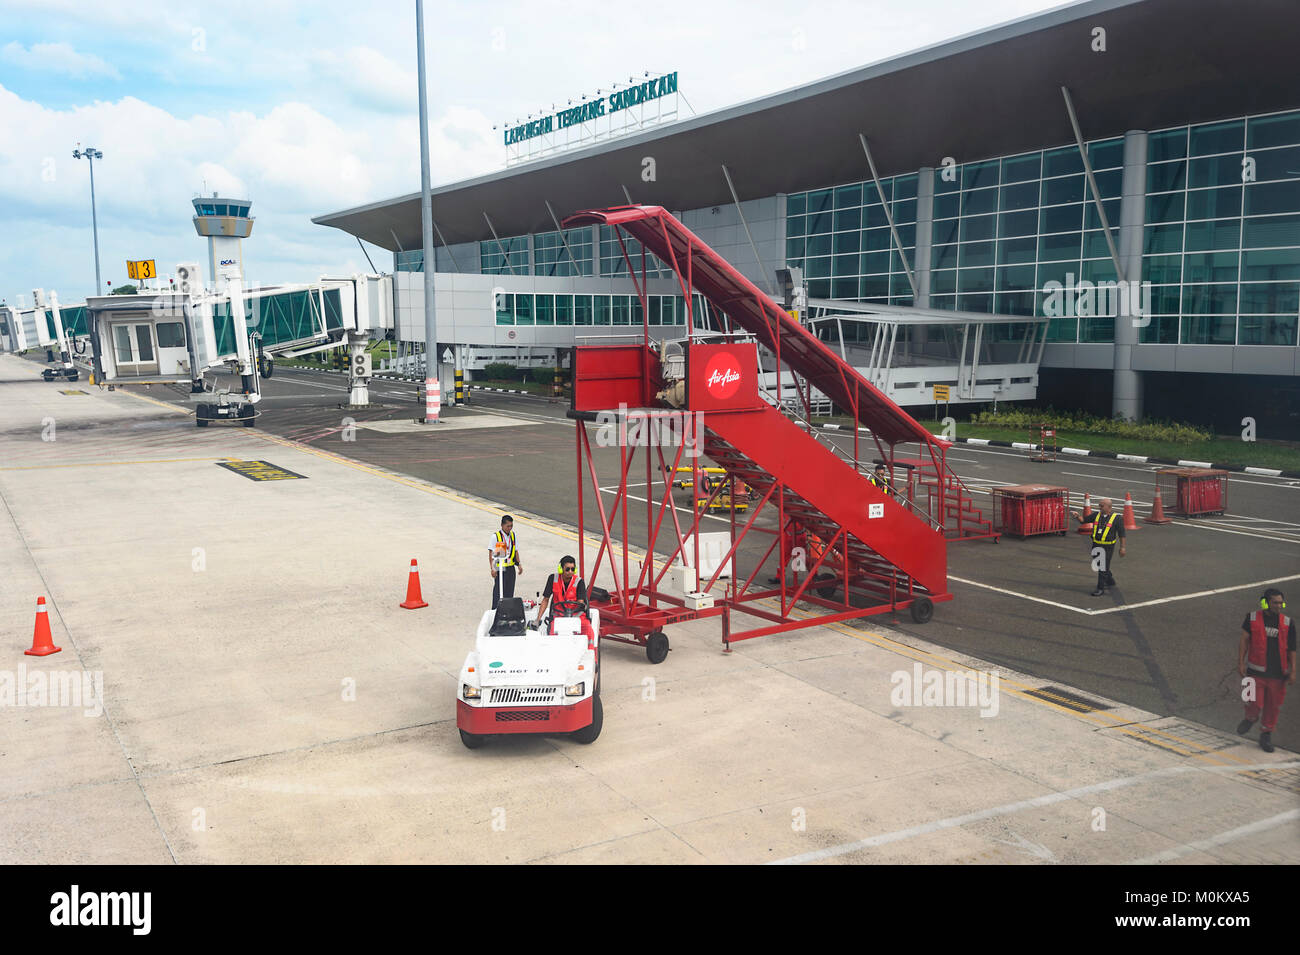 Sabah airport